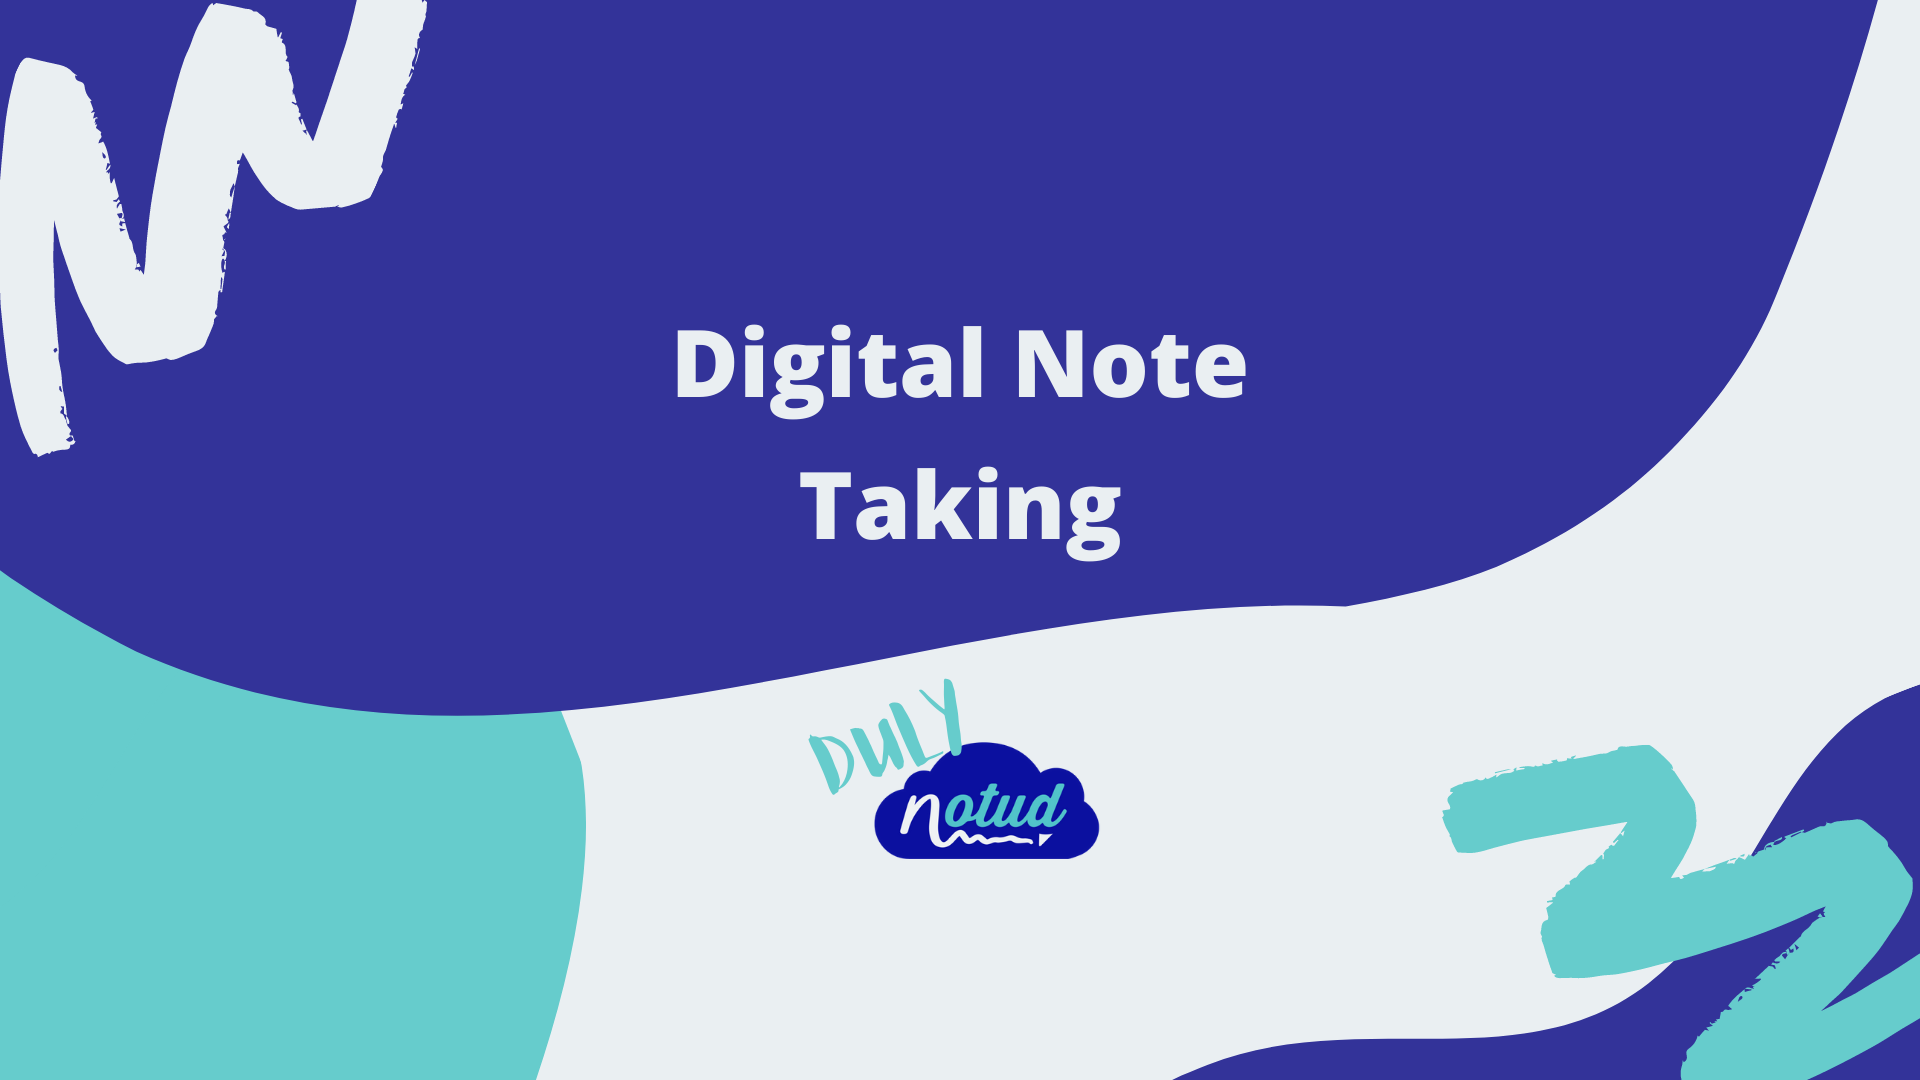 Duly Notud blog - digital note taking